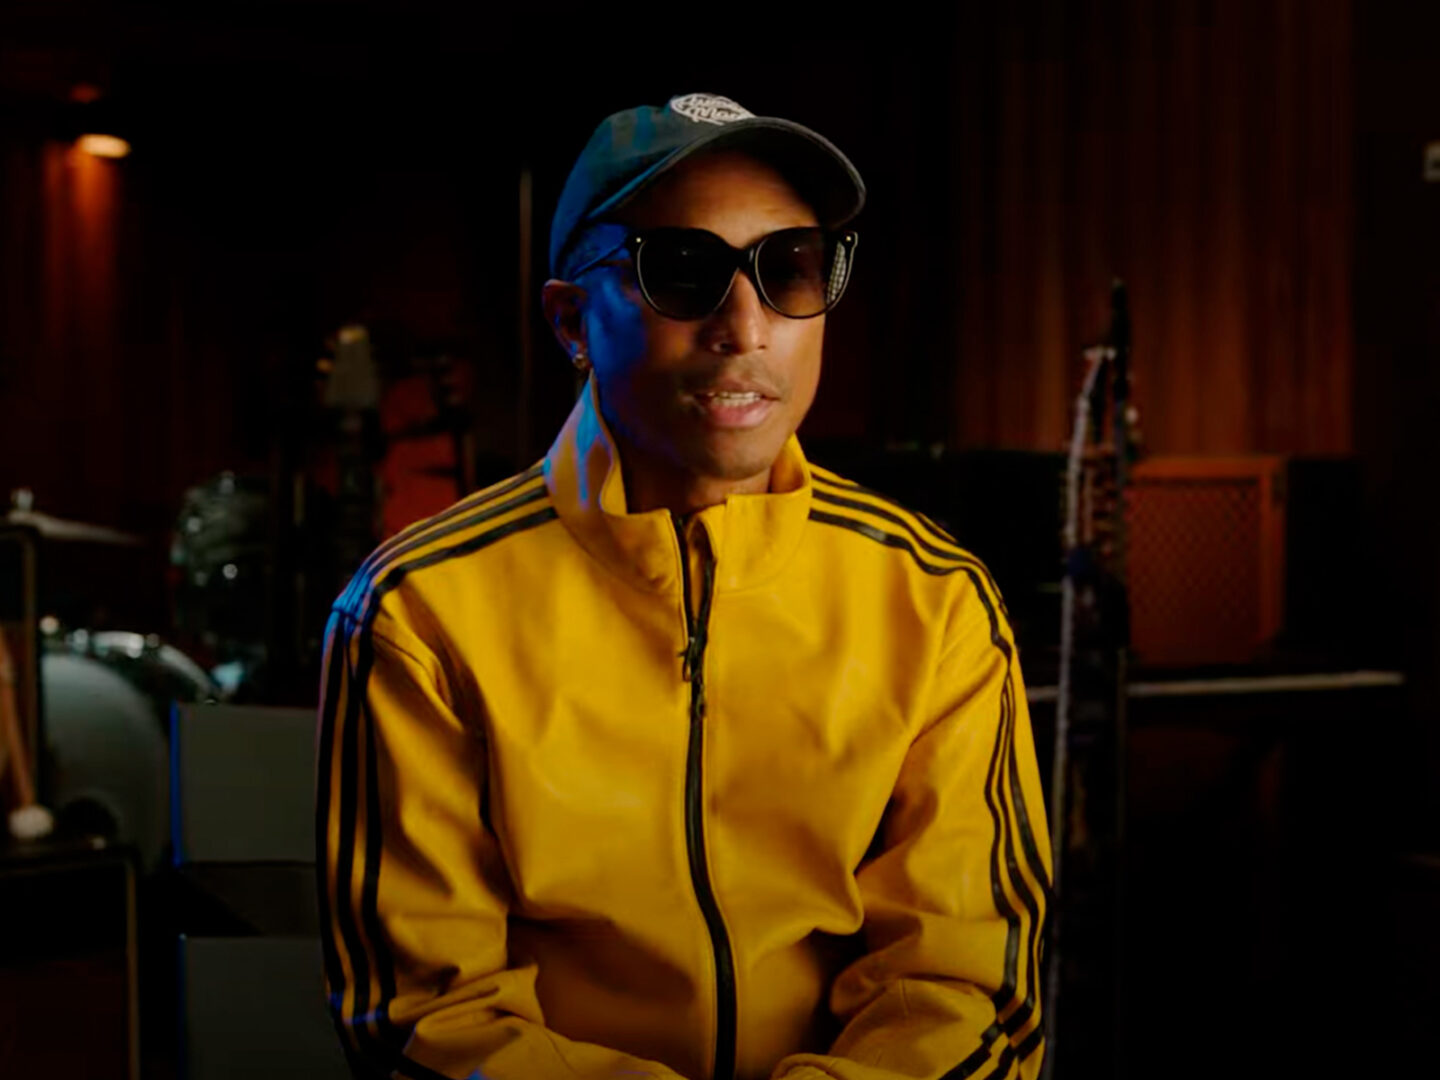 Daft Punk comparte la reacción de Pharrell al escuchar «Get Lucky» por primera vez